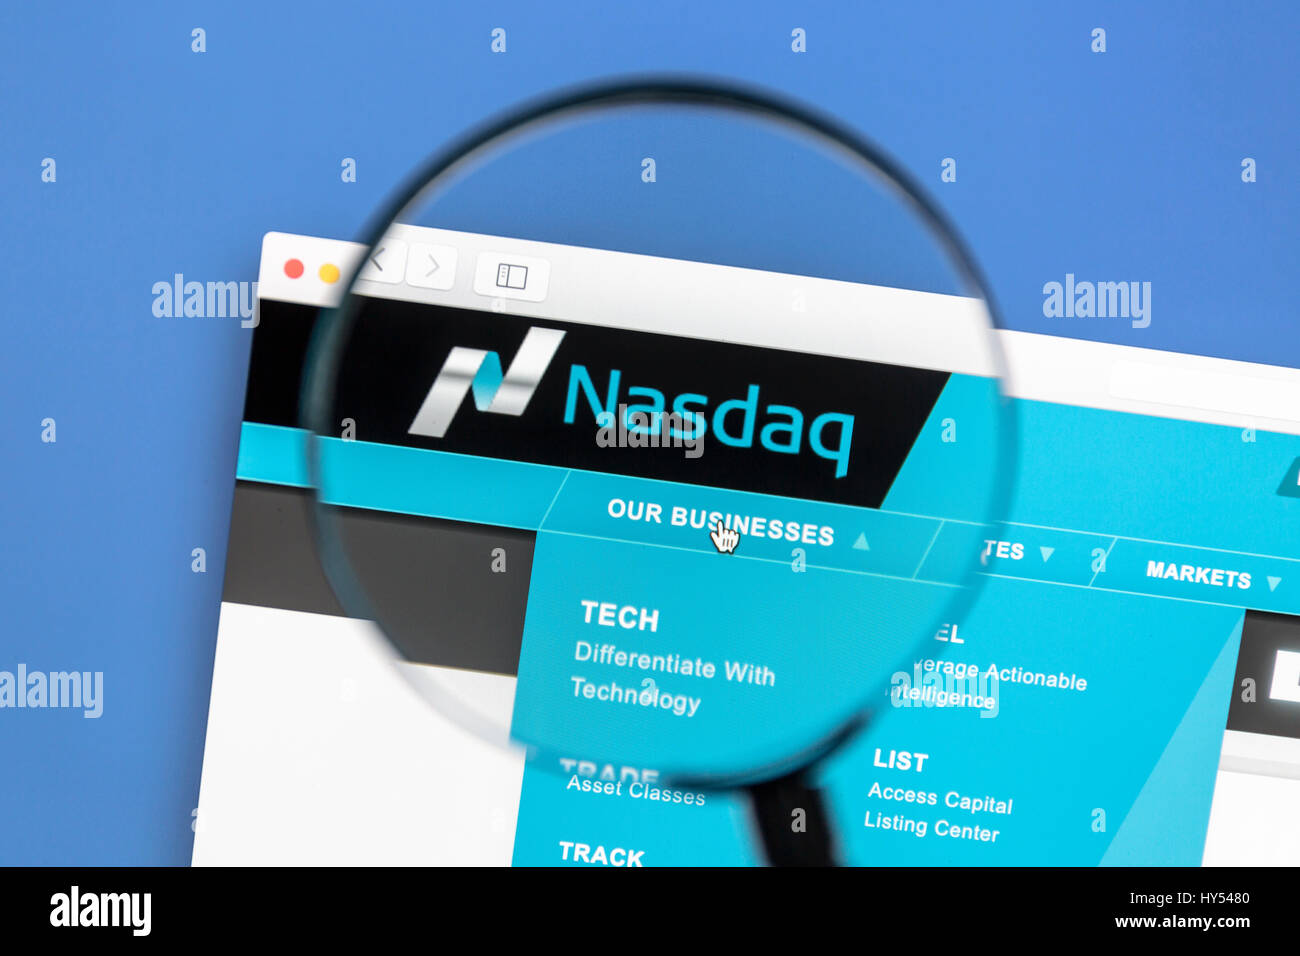 Nasdaq Stock Market site web sous une loupe. Nasdaq est un American Stock Exchange. Banque D'Images